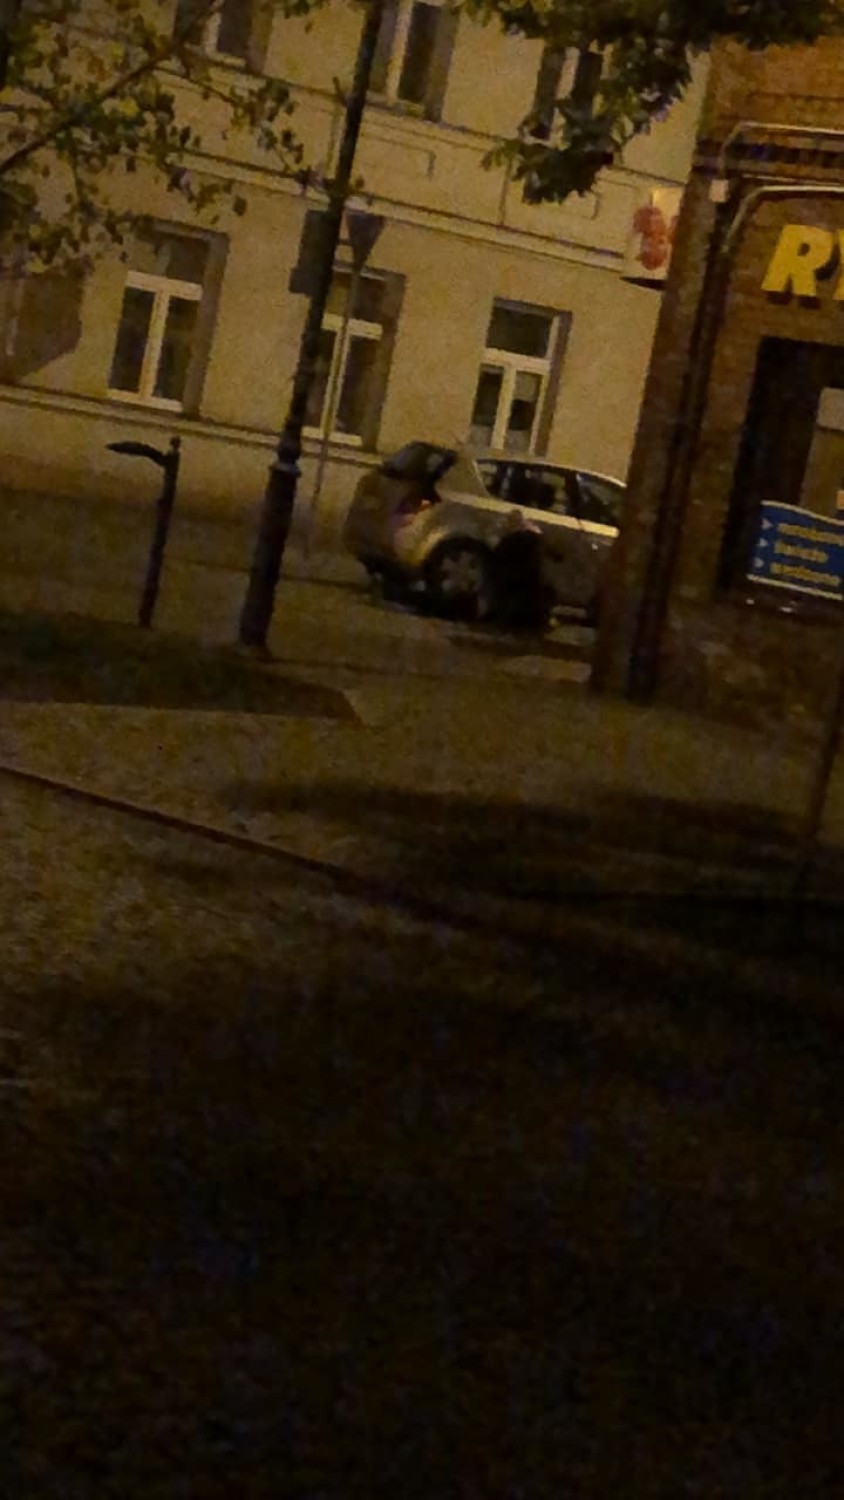 Akcja policji w centrum Włocławka. Pijany 27-letni kierowca fiata seicento zatrzymany [zdjęcia]